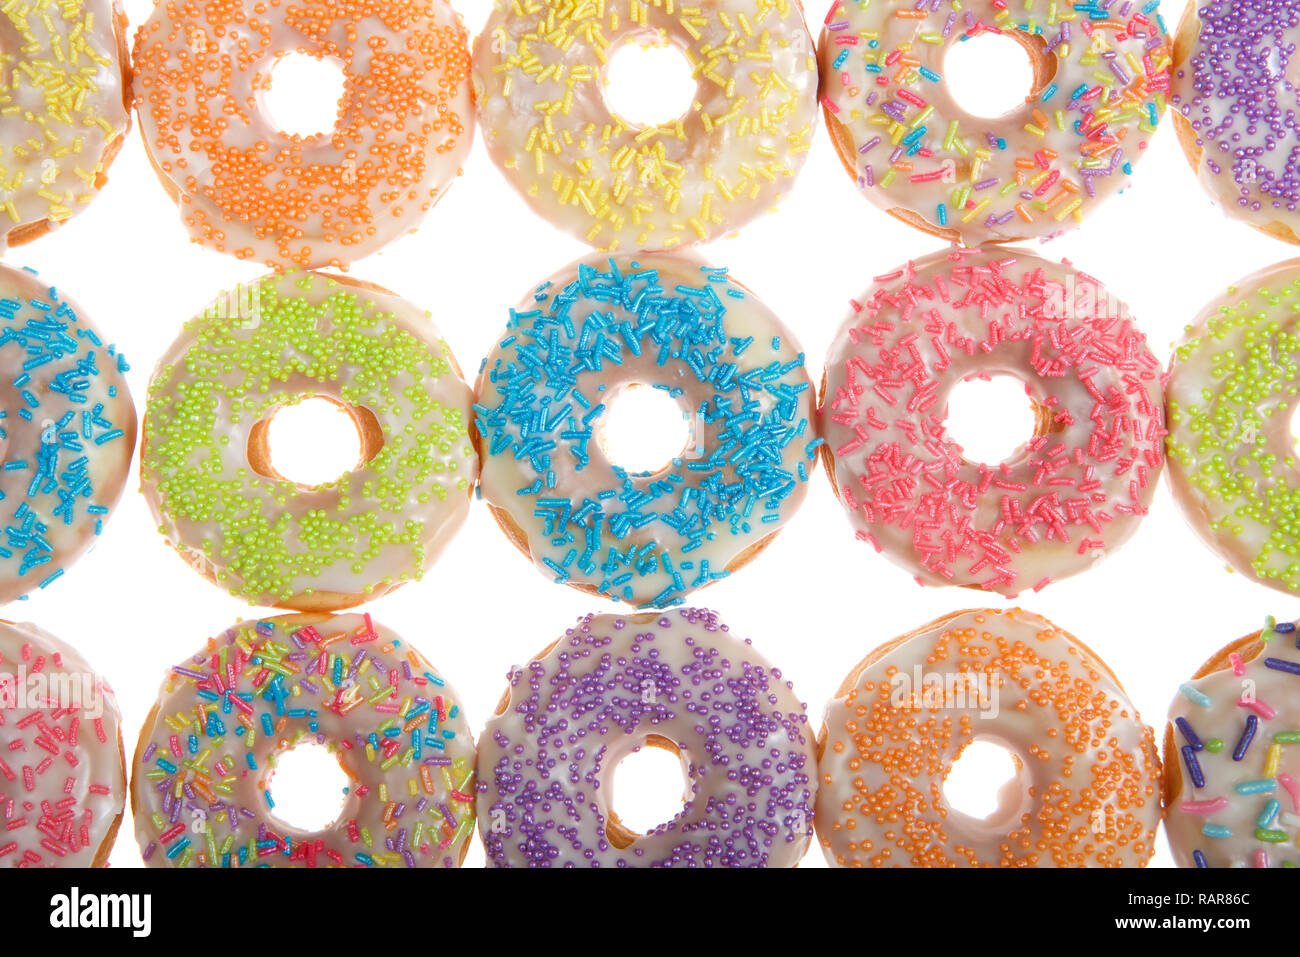 Flach Ansicht vieler Frosted Donuts mit Süßigkeiten besprüht auf Weiß isoliert Stockfoto